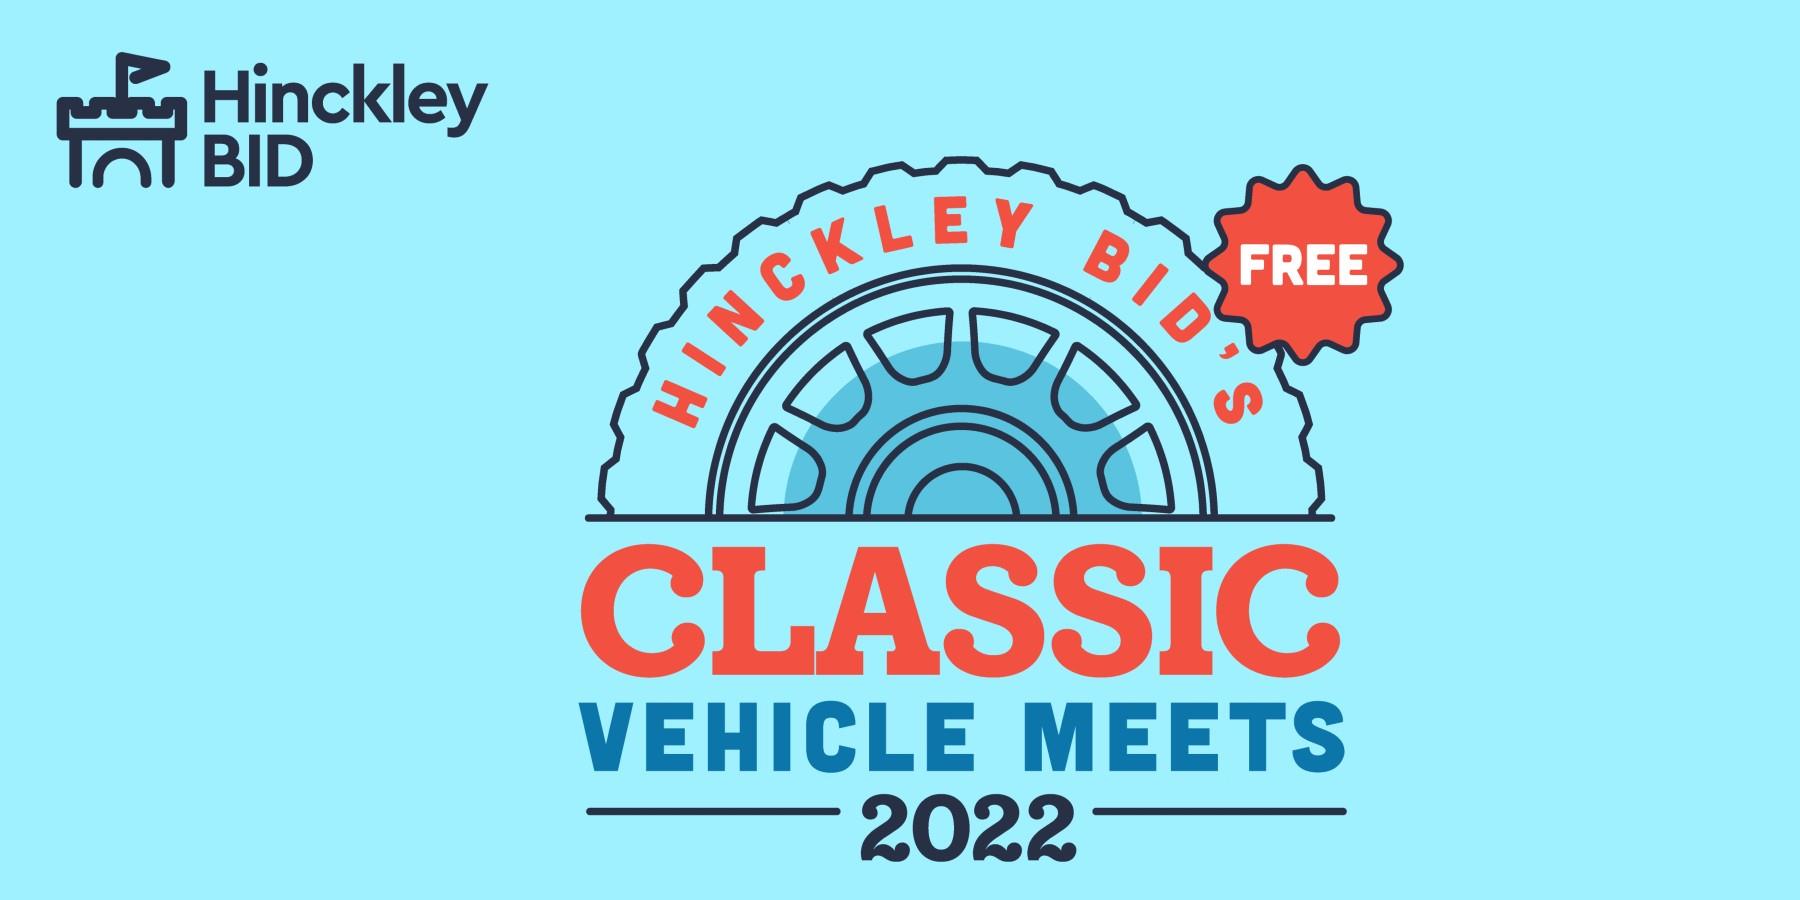 Hinckley BID's Classic Vehicle Meets